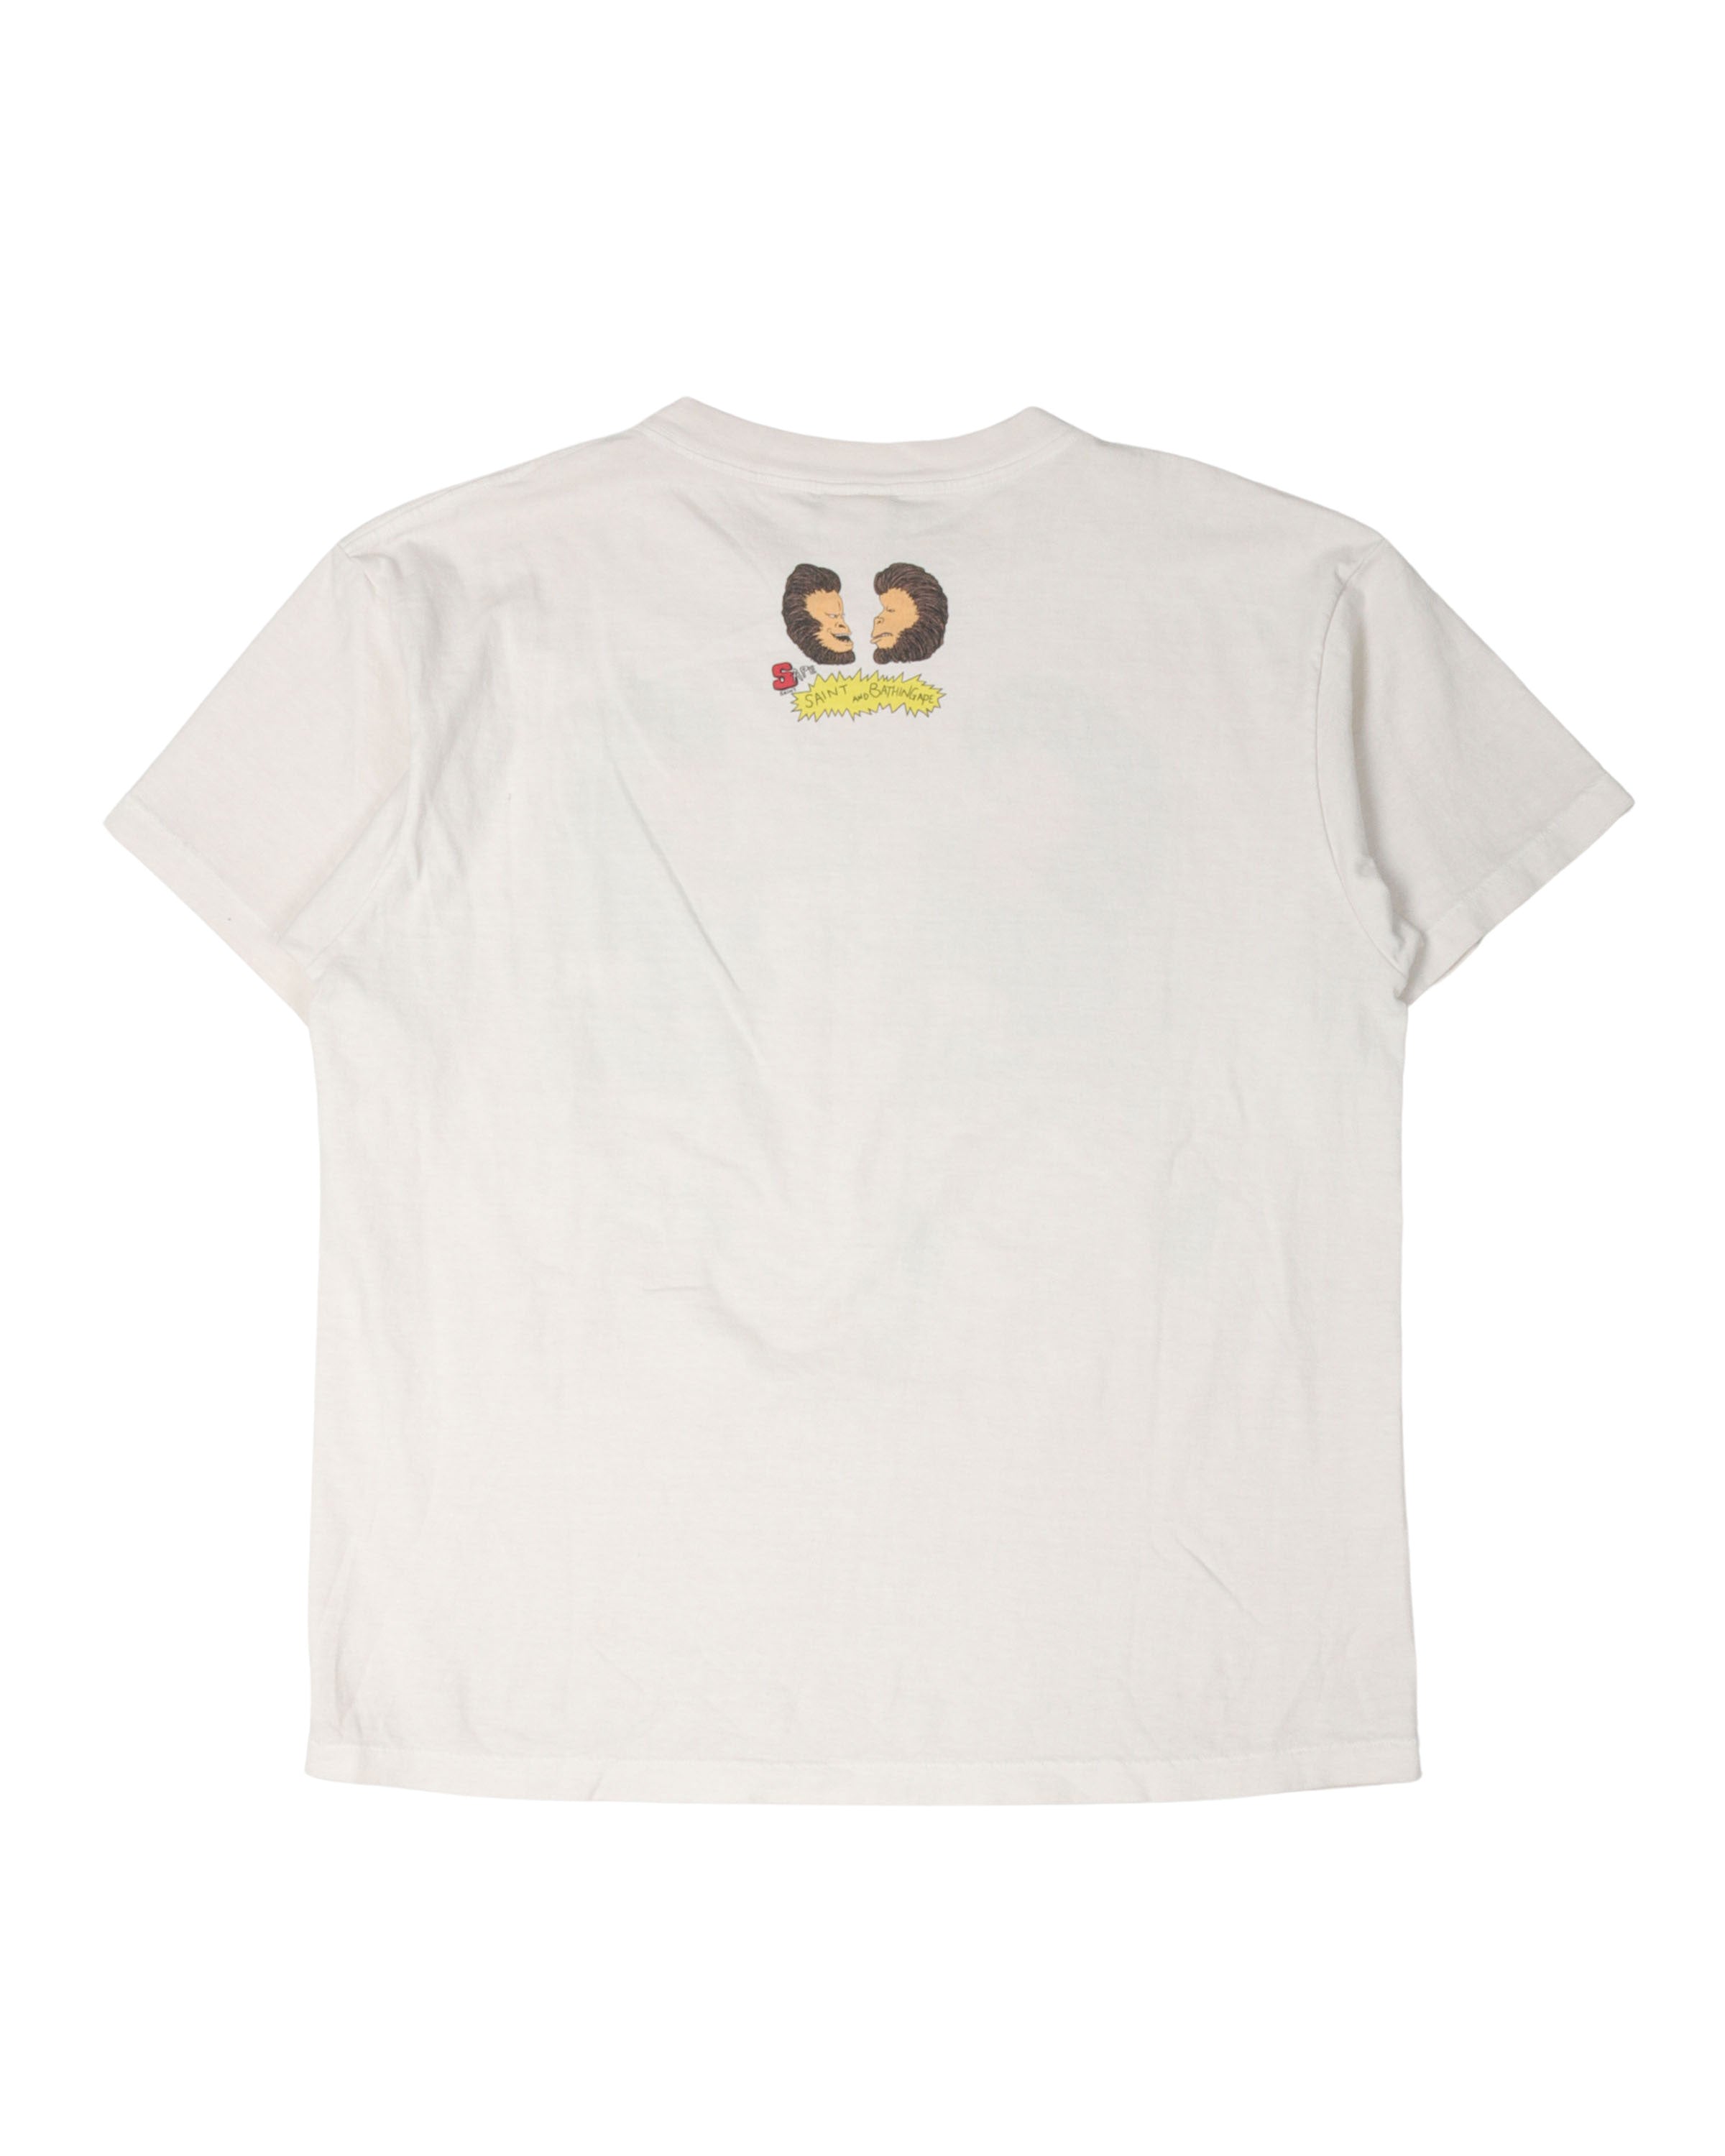 BAPE Beavis and Butthead Parody T-Shirt